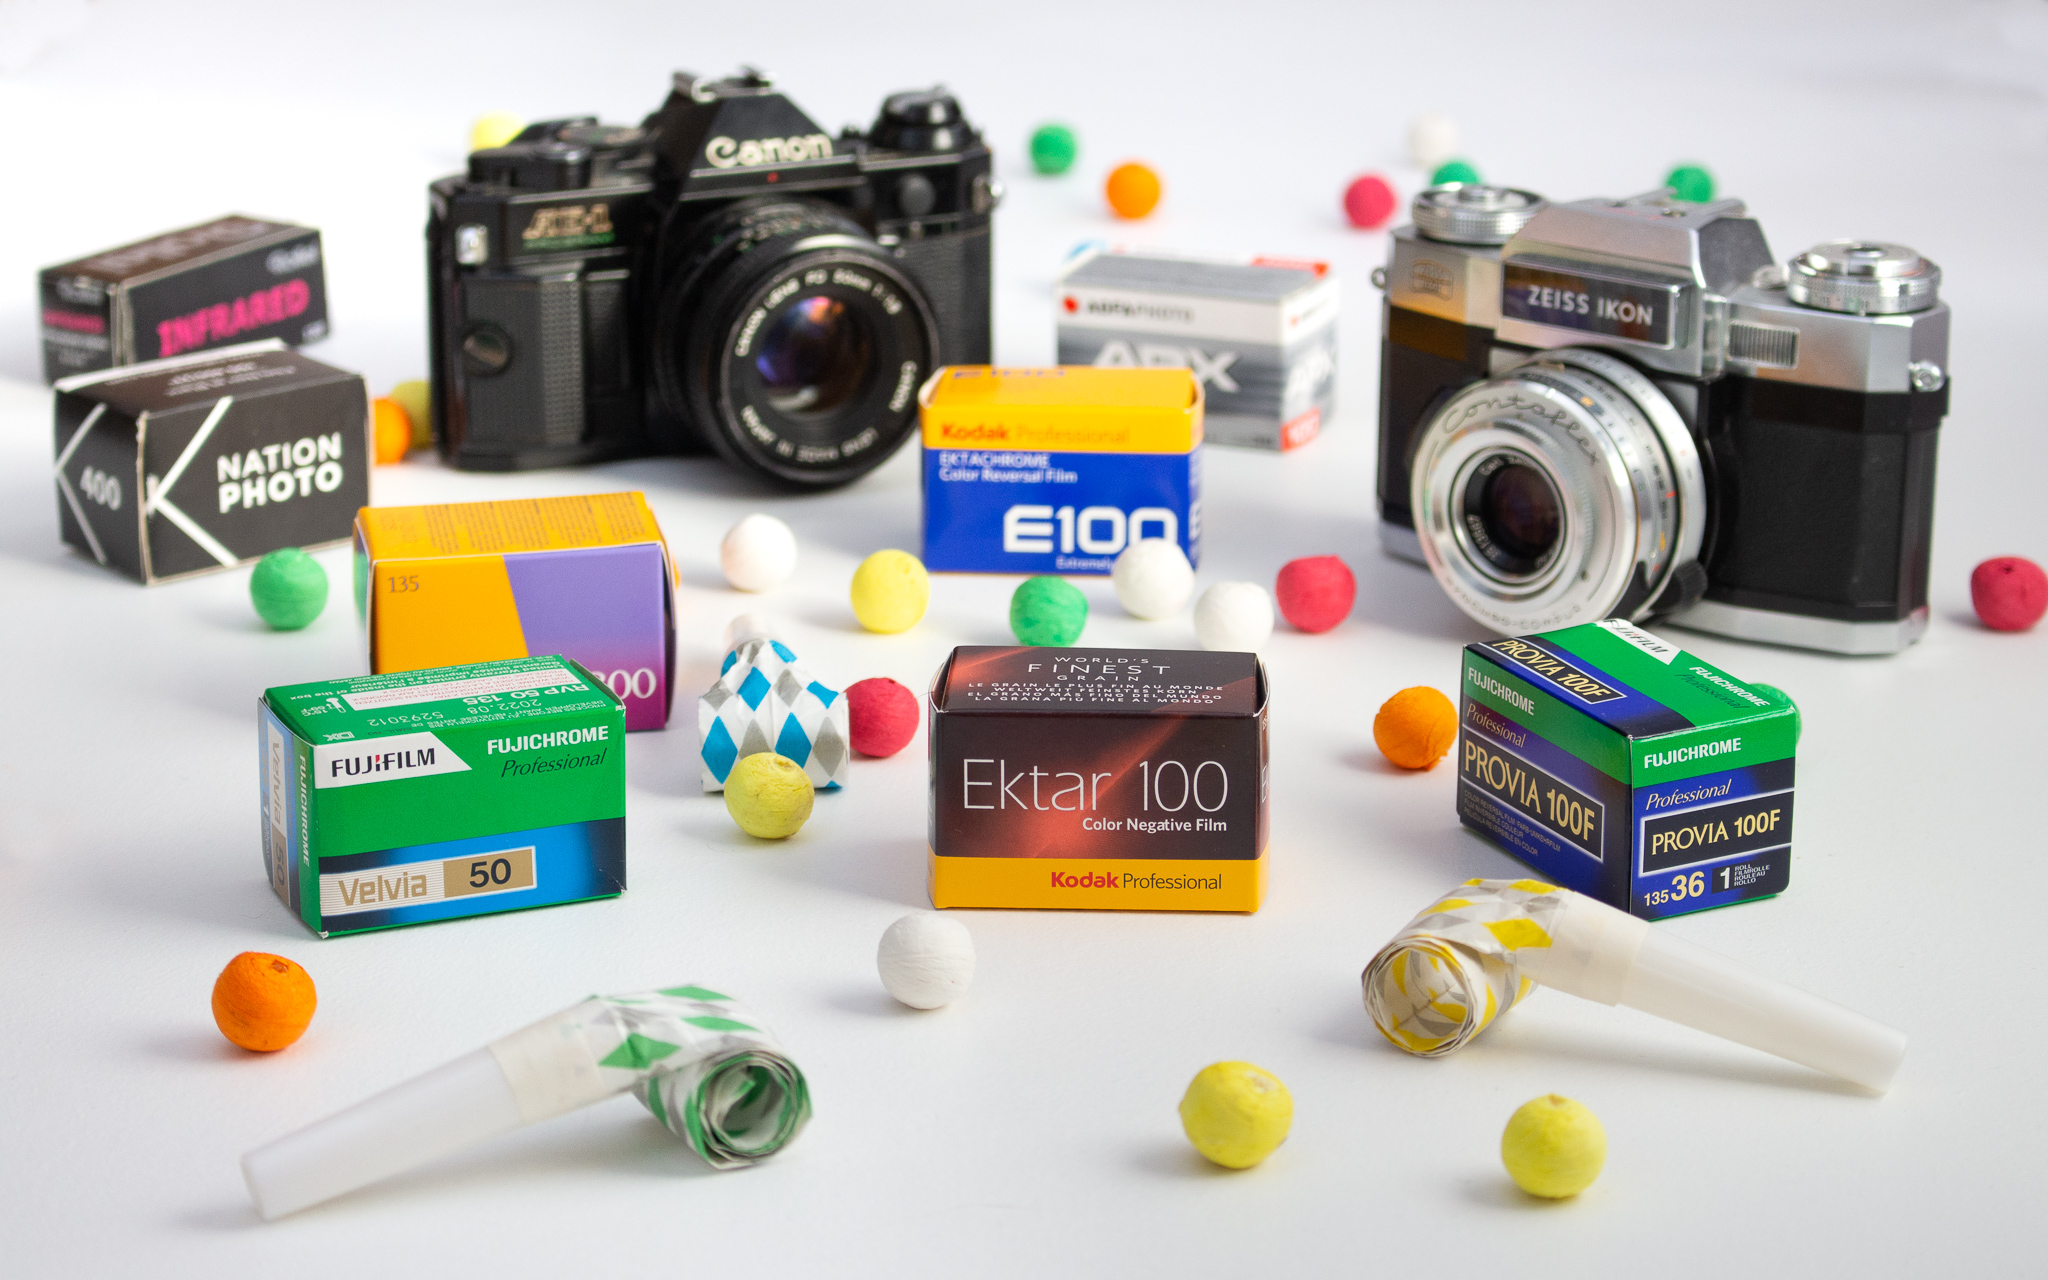 Comment choisir son premier appareil photo argentique ? – BromureFilm